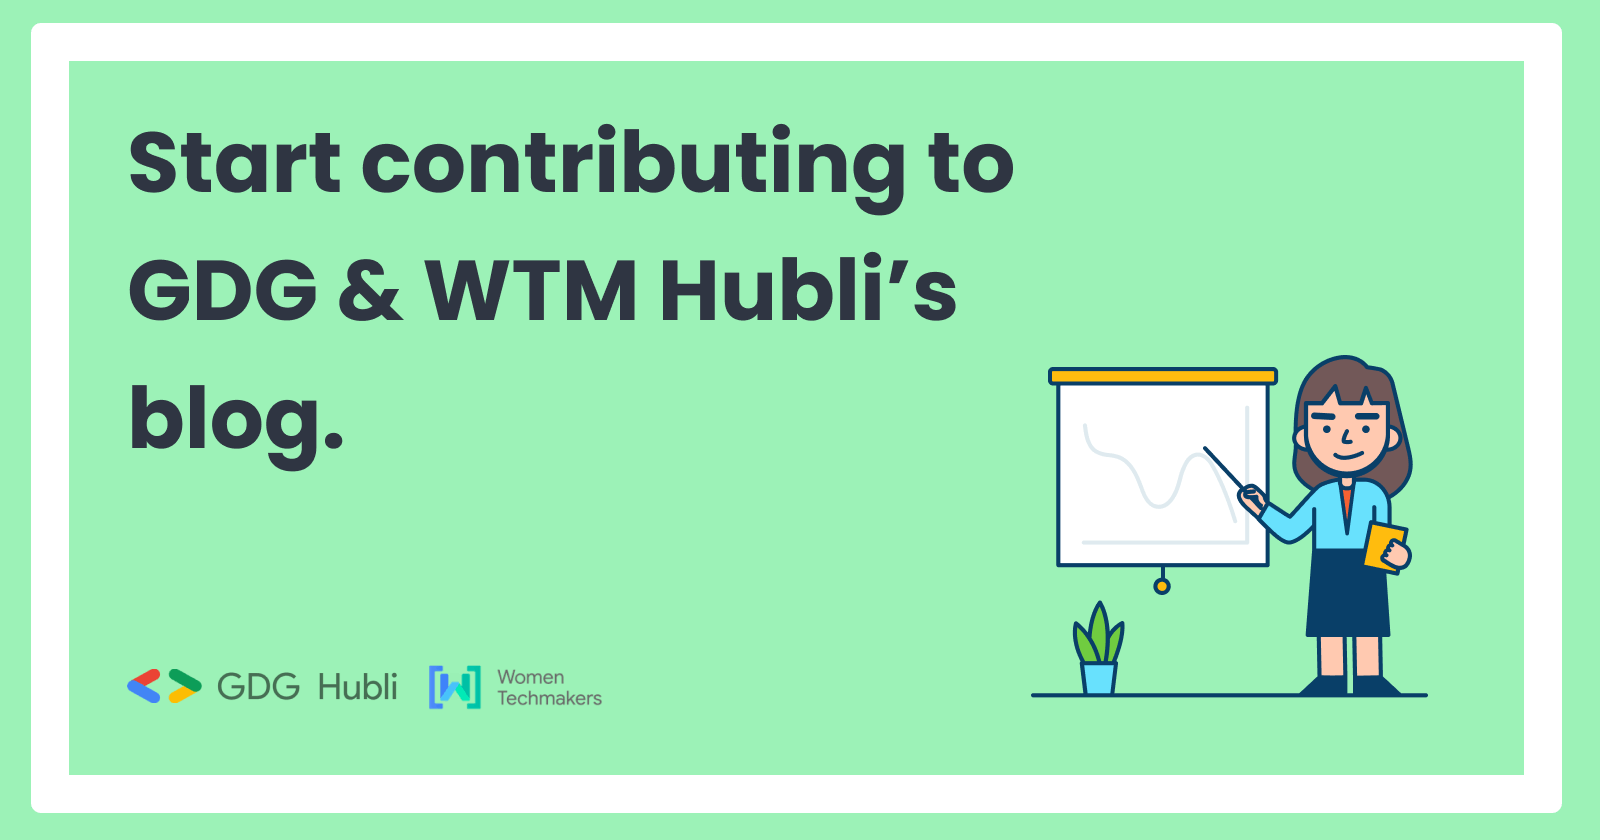 Announcing GDG & WTM Hubli community blog